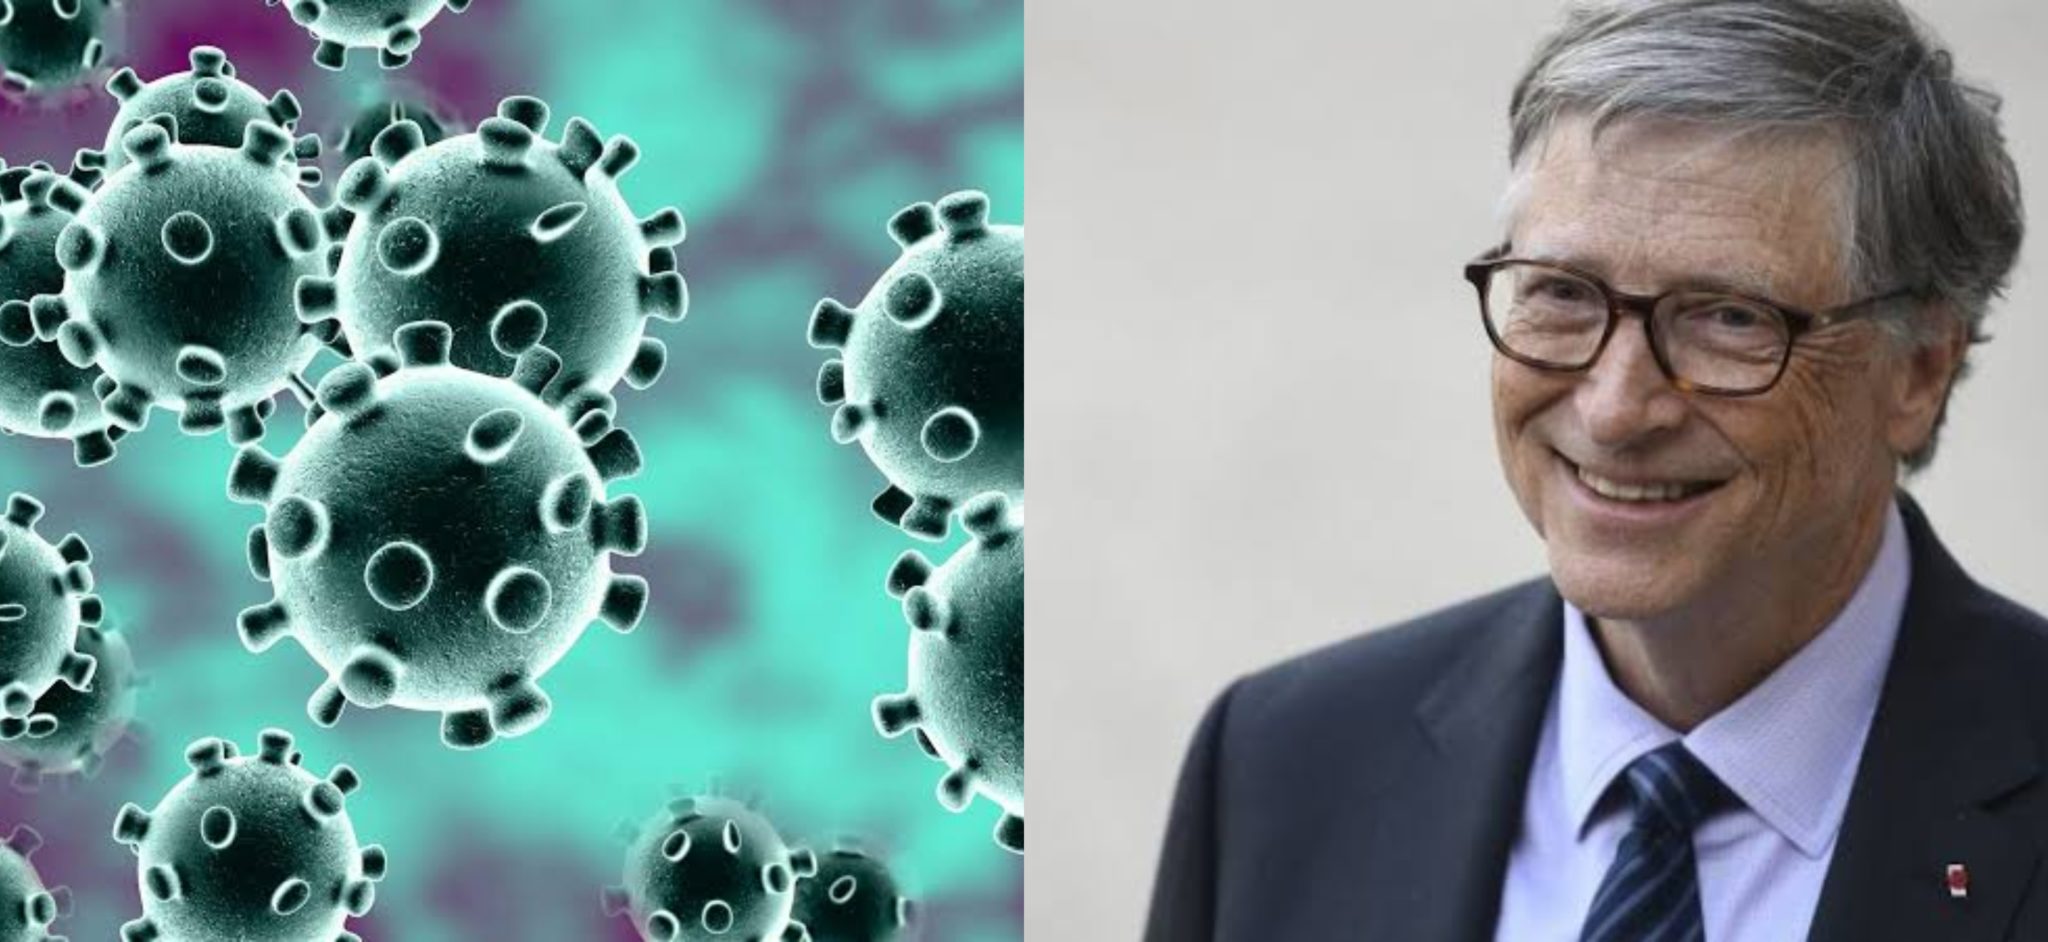 Bill Gates Predicted Coronavirus